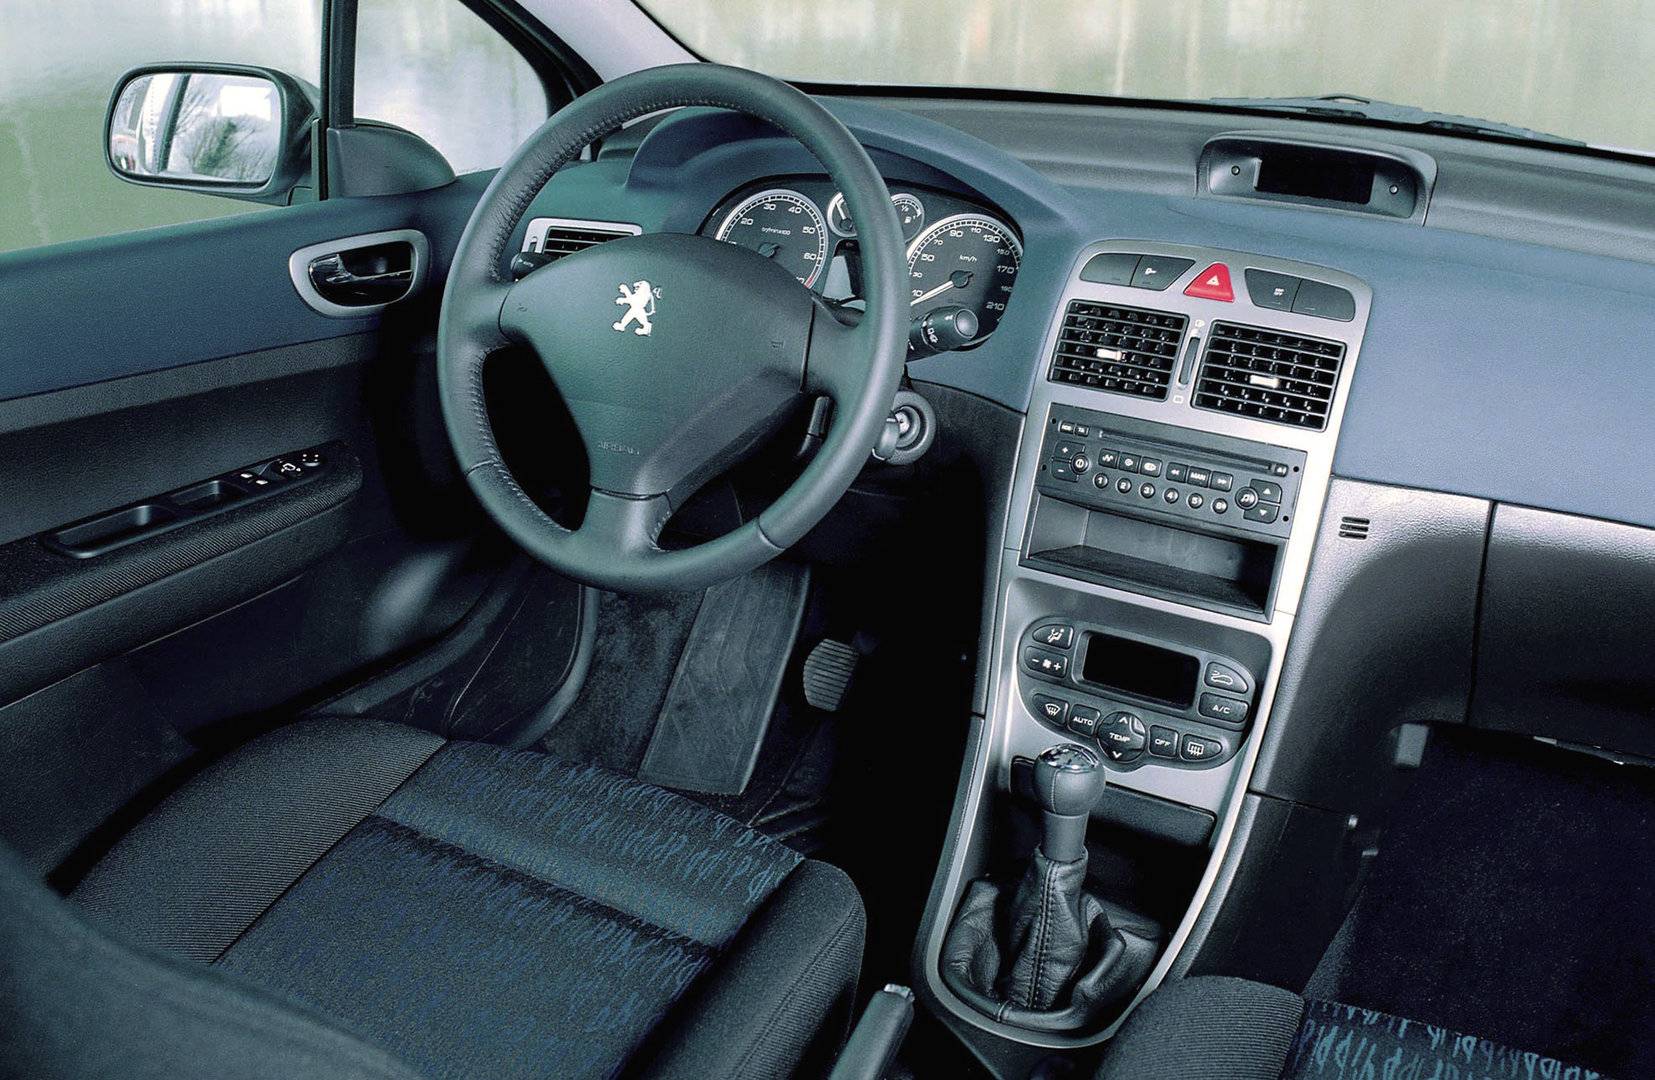 Peugeot 307 Interior